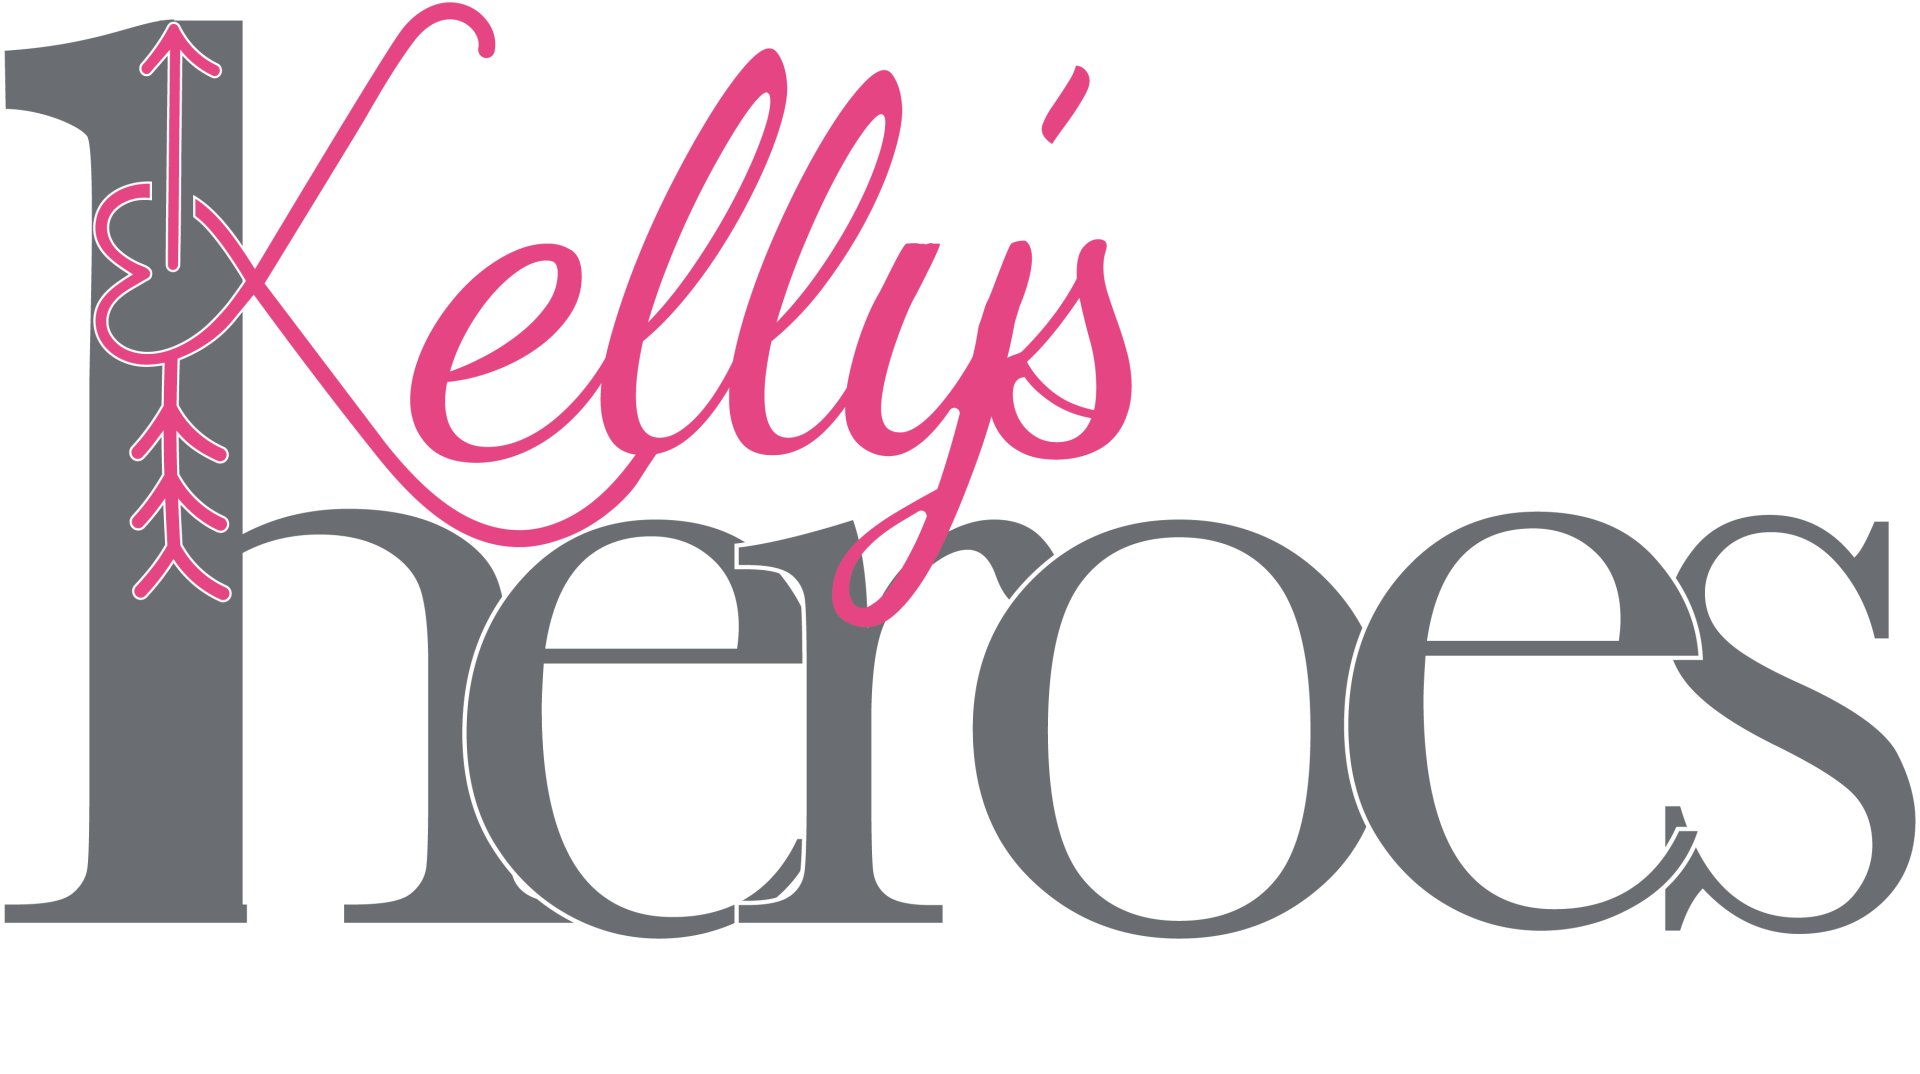 Kellys heroes Logo